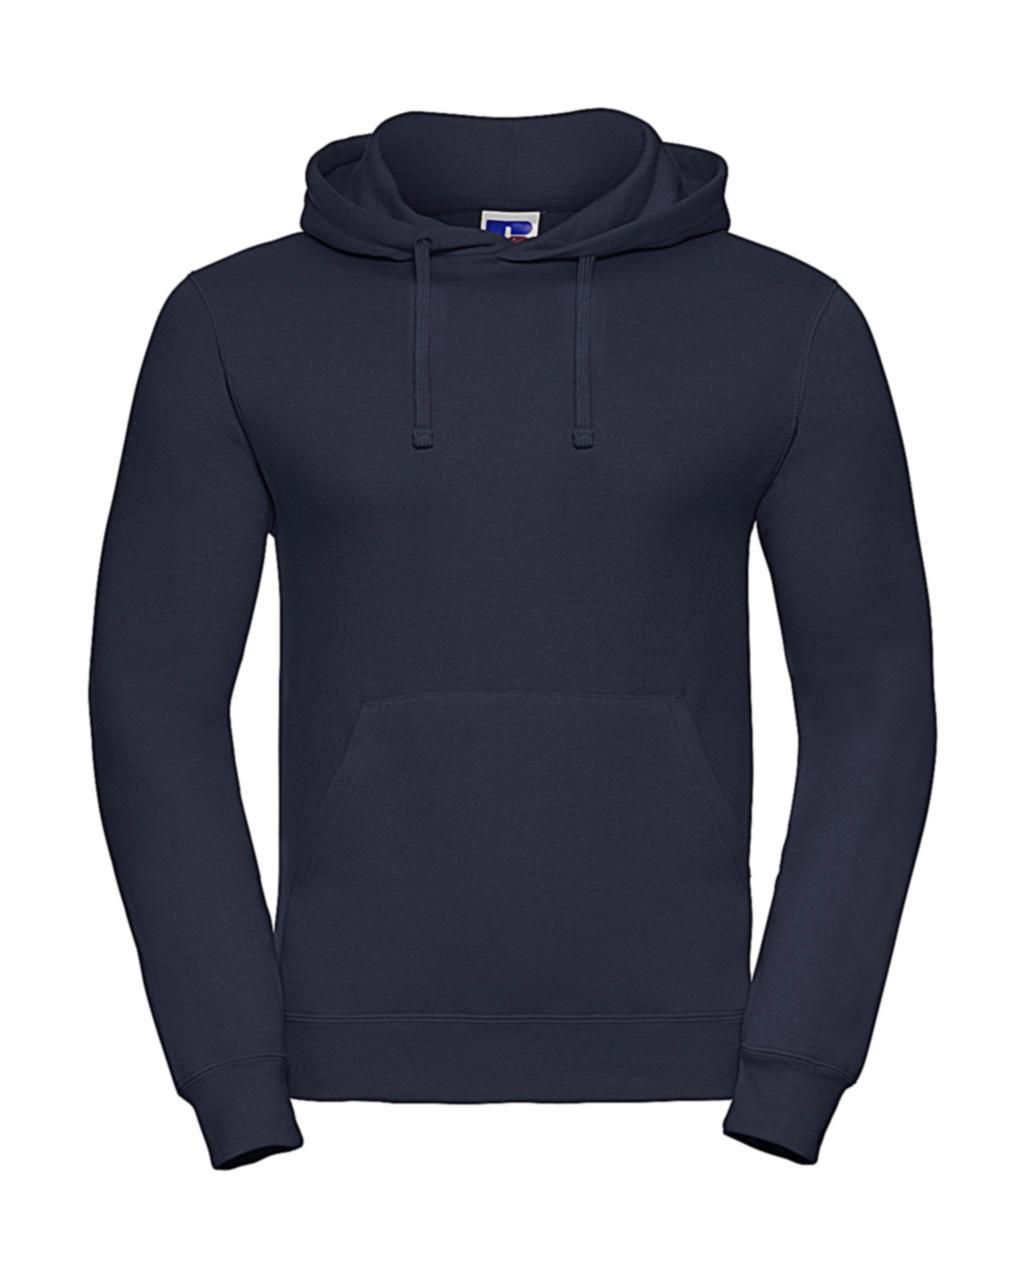 Hooded Sweatshirt zum Besticken und Bedrucken in der Farbe French Navy mit Ihren Logo, Schriftzug oder Motiv.